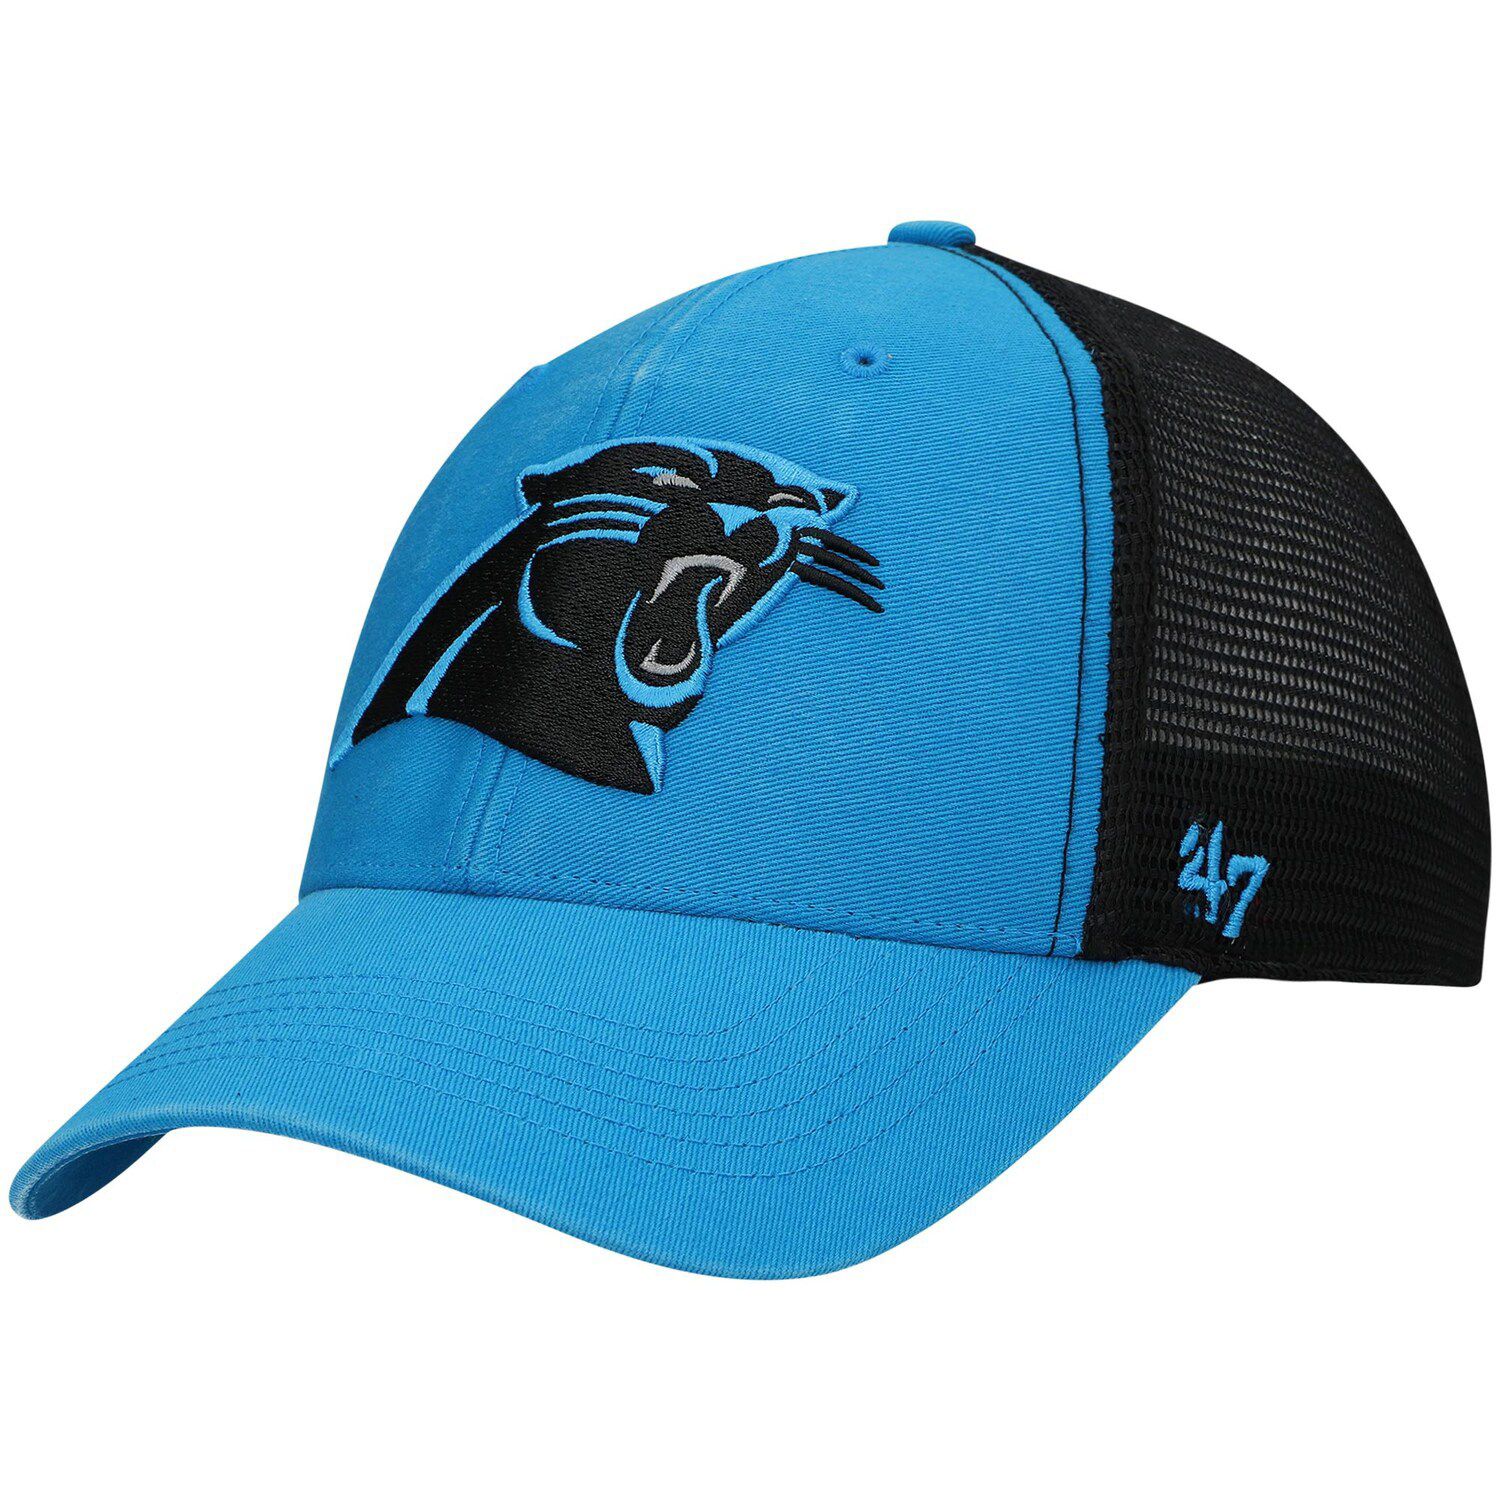 Image for Unbranded Men's '47 Carolina Blue Carolina Panthers Flagship MVP Snapback Hat at Kohl's.